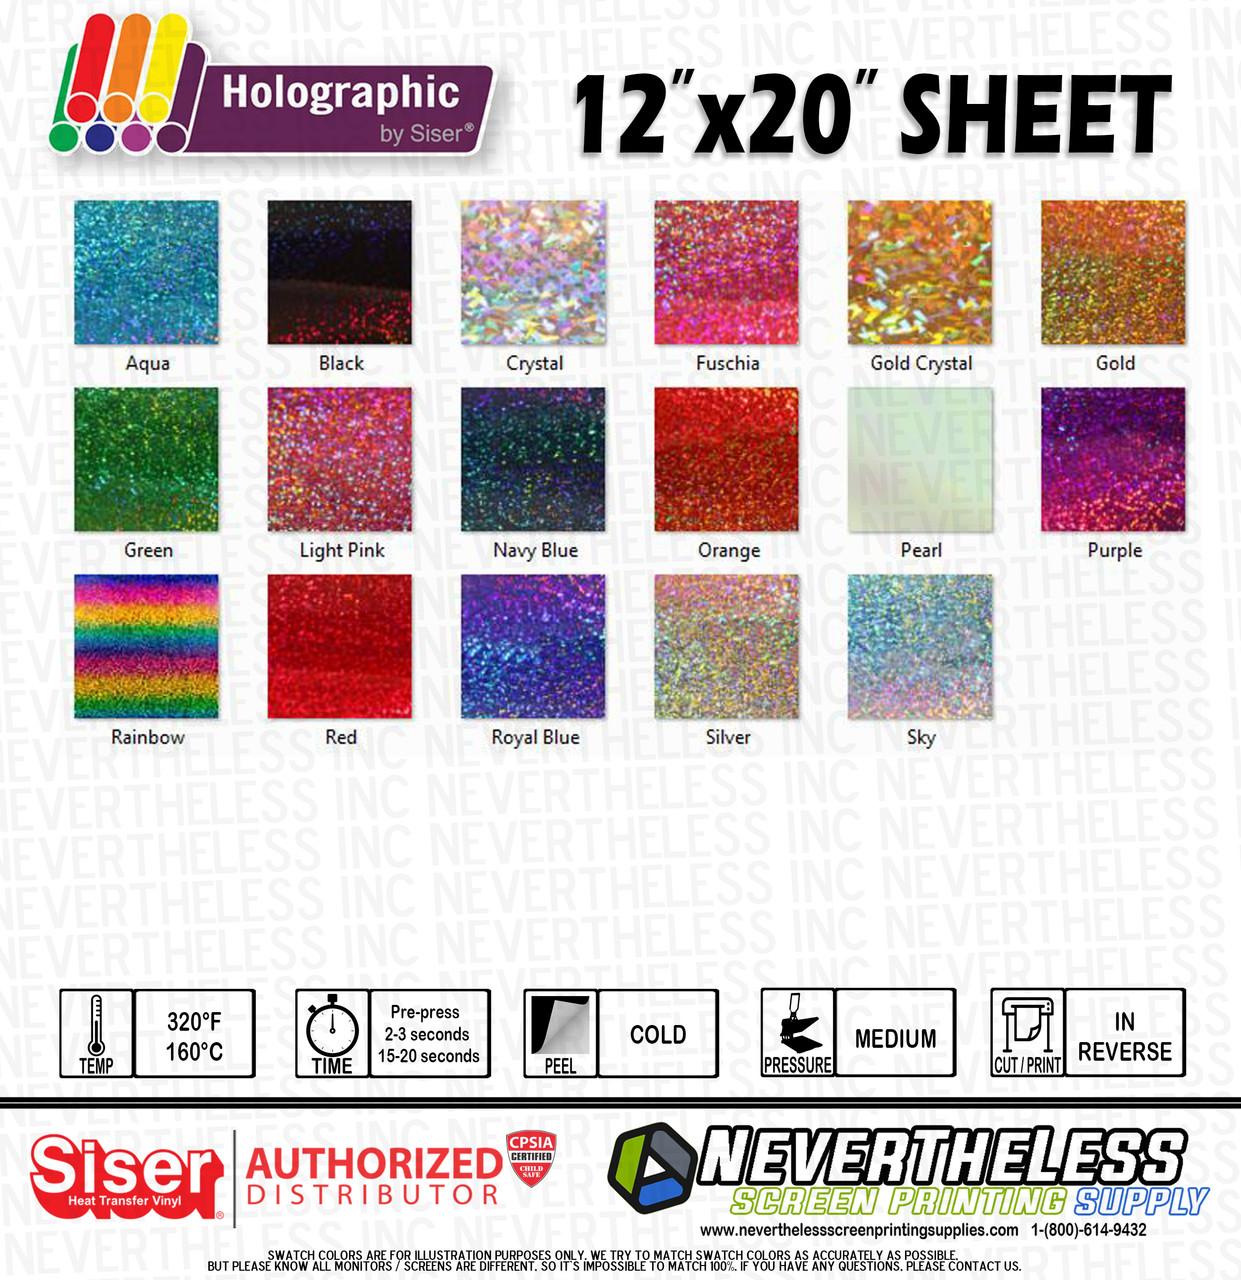 Siser Holographic HTV Heat Transfer Vinyl 12"x20" Sheet